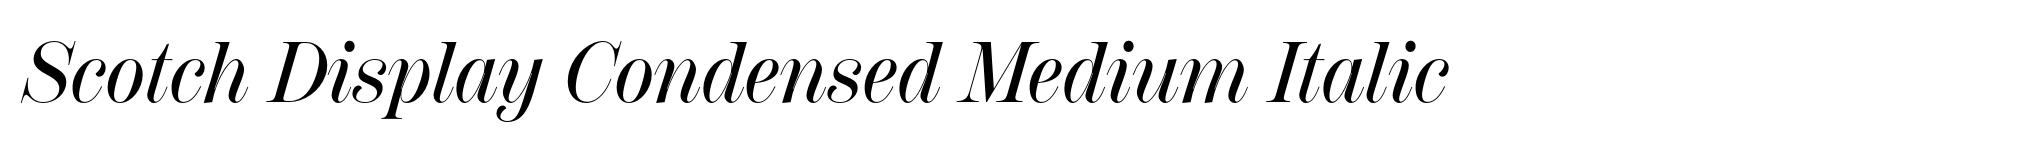 Scotch Display Condensed Medium Italic image